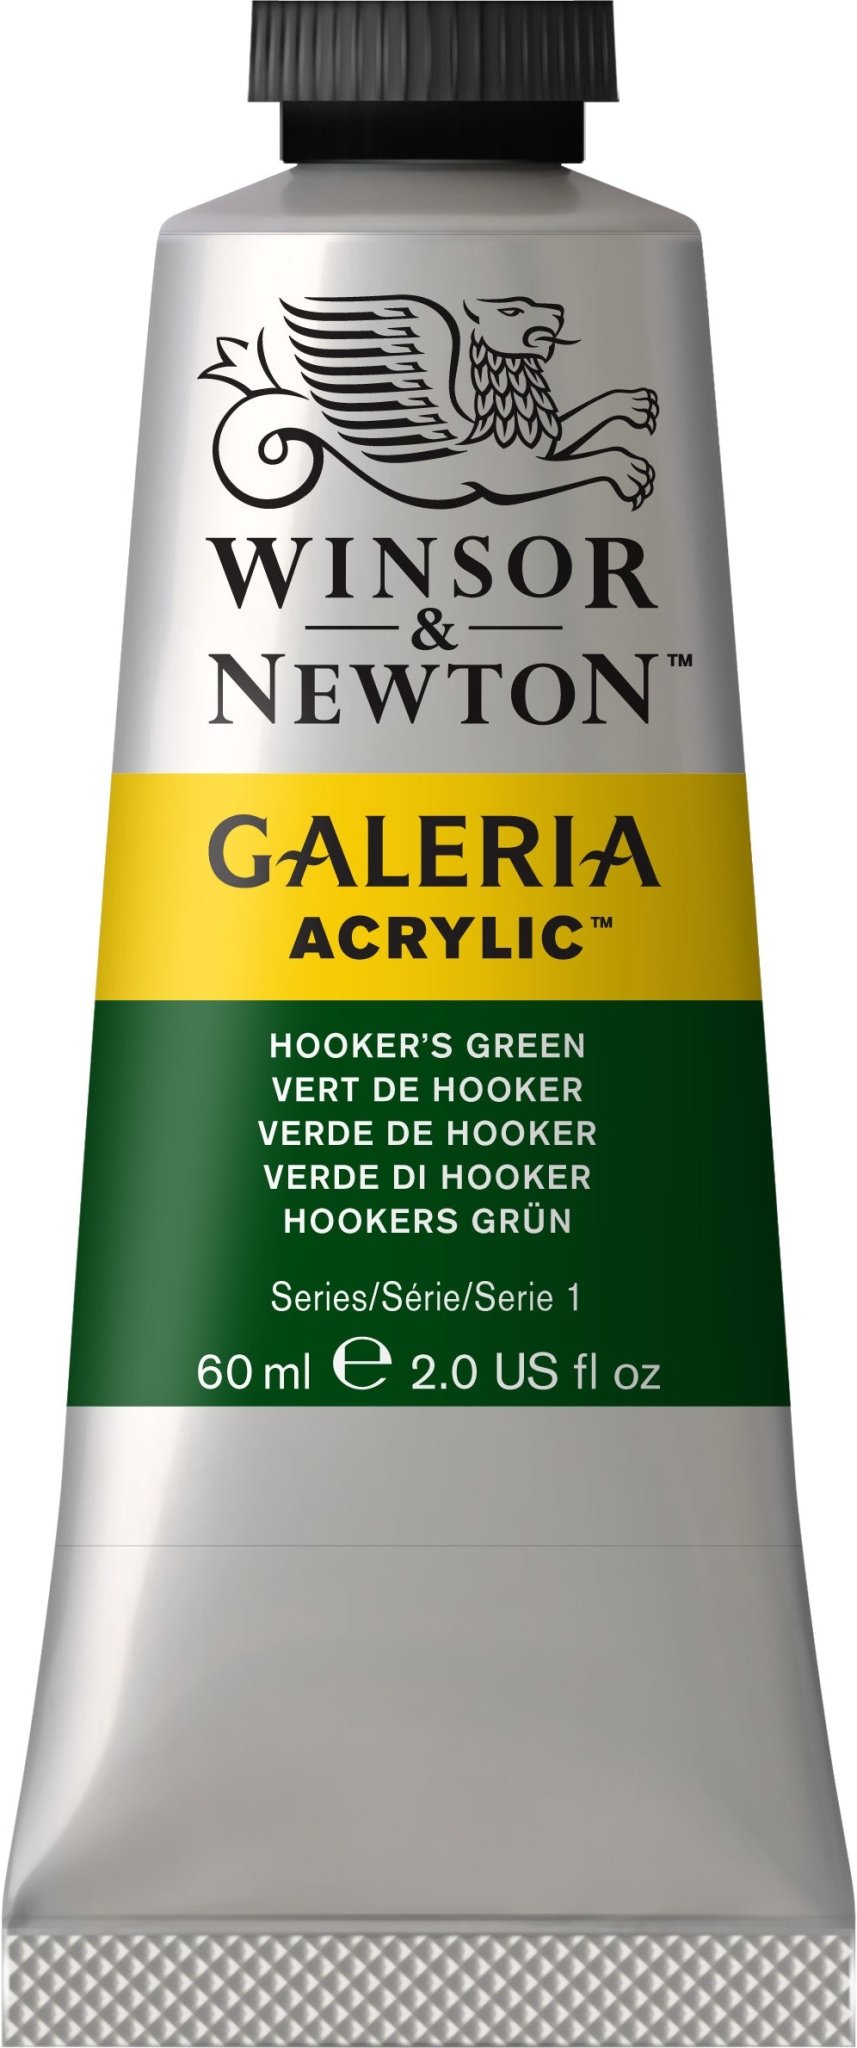 W & N Galeria Acrylic 60ml Hooker's Green - theartshop.com.au